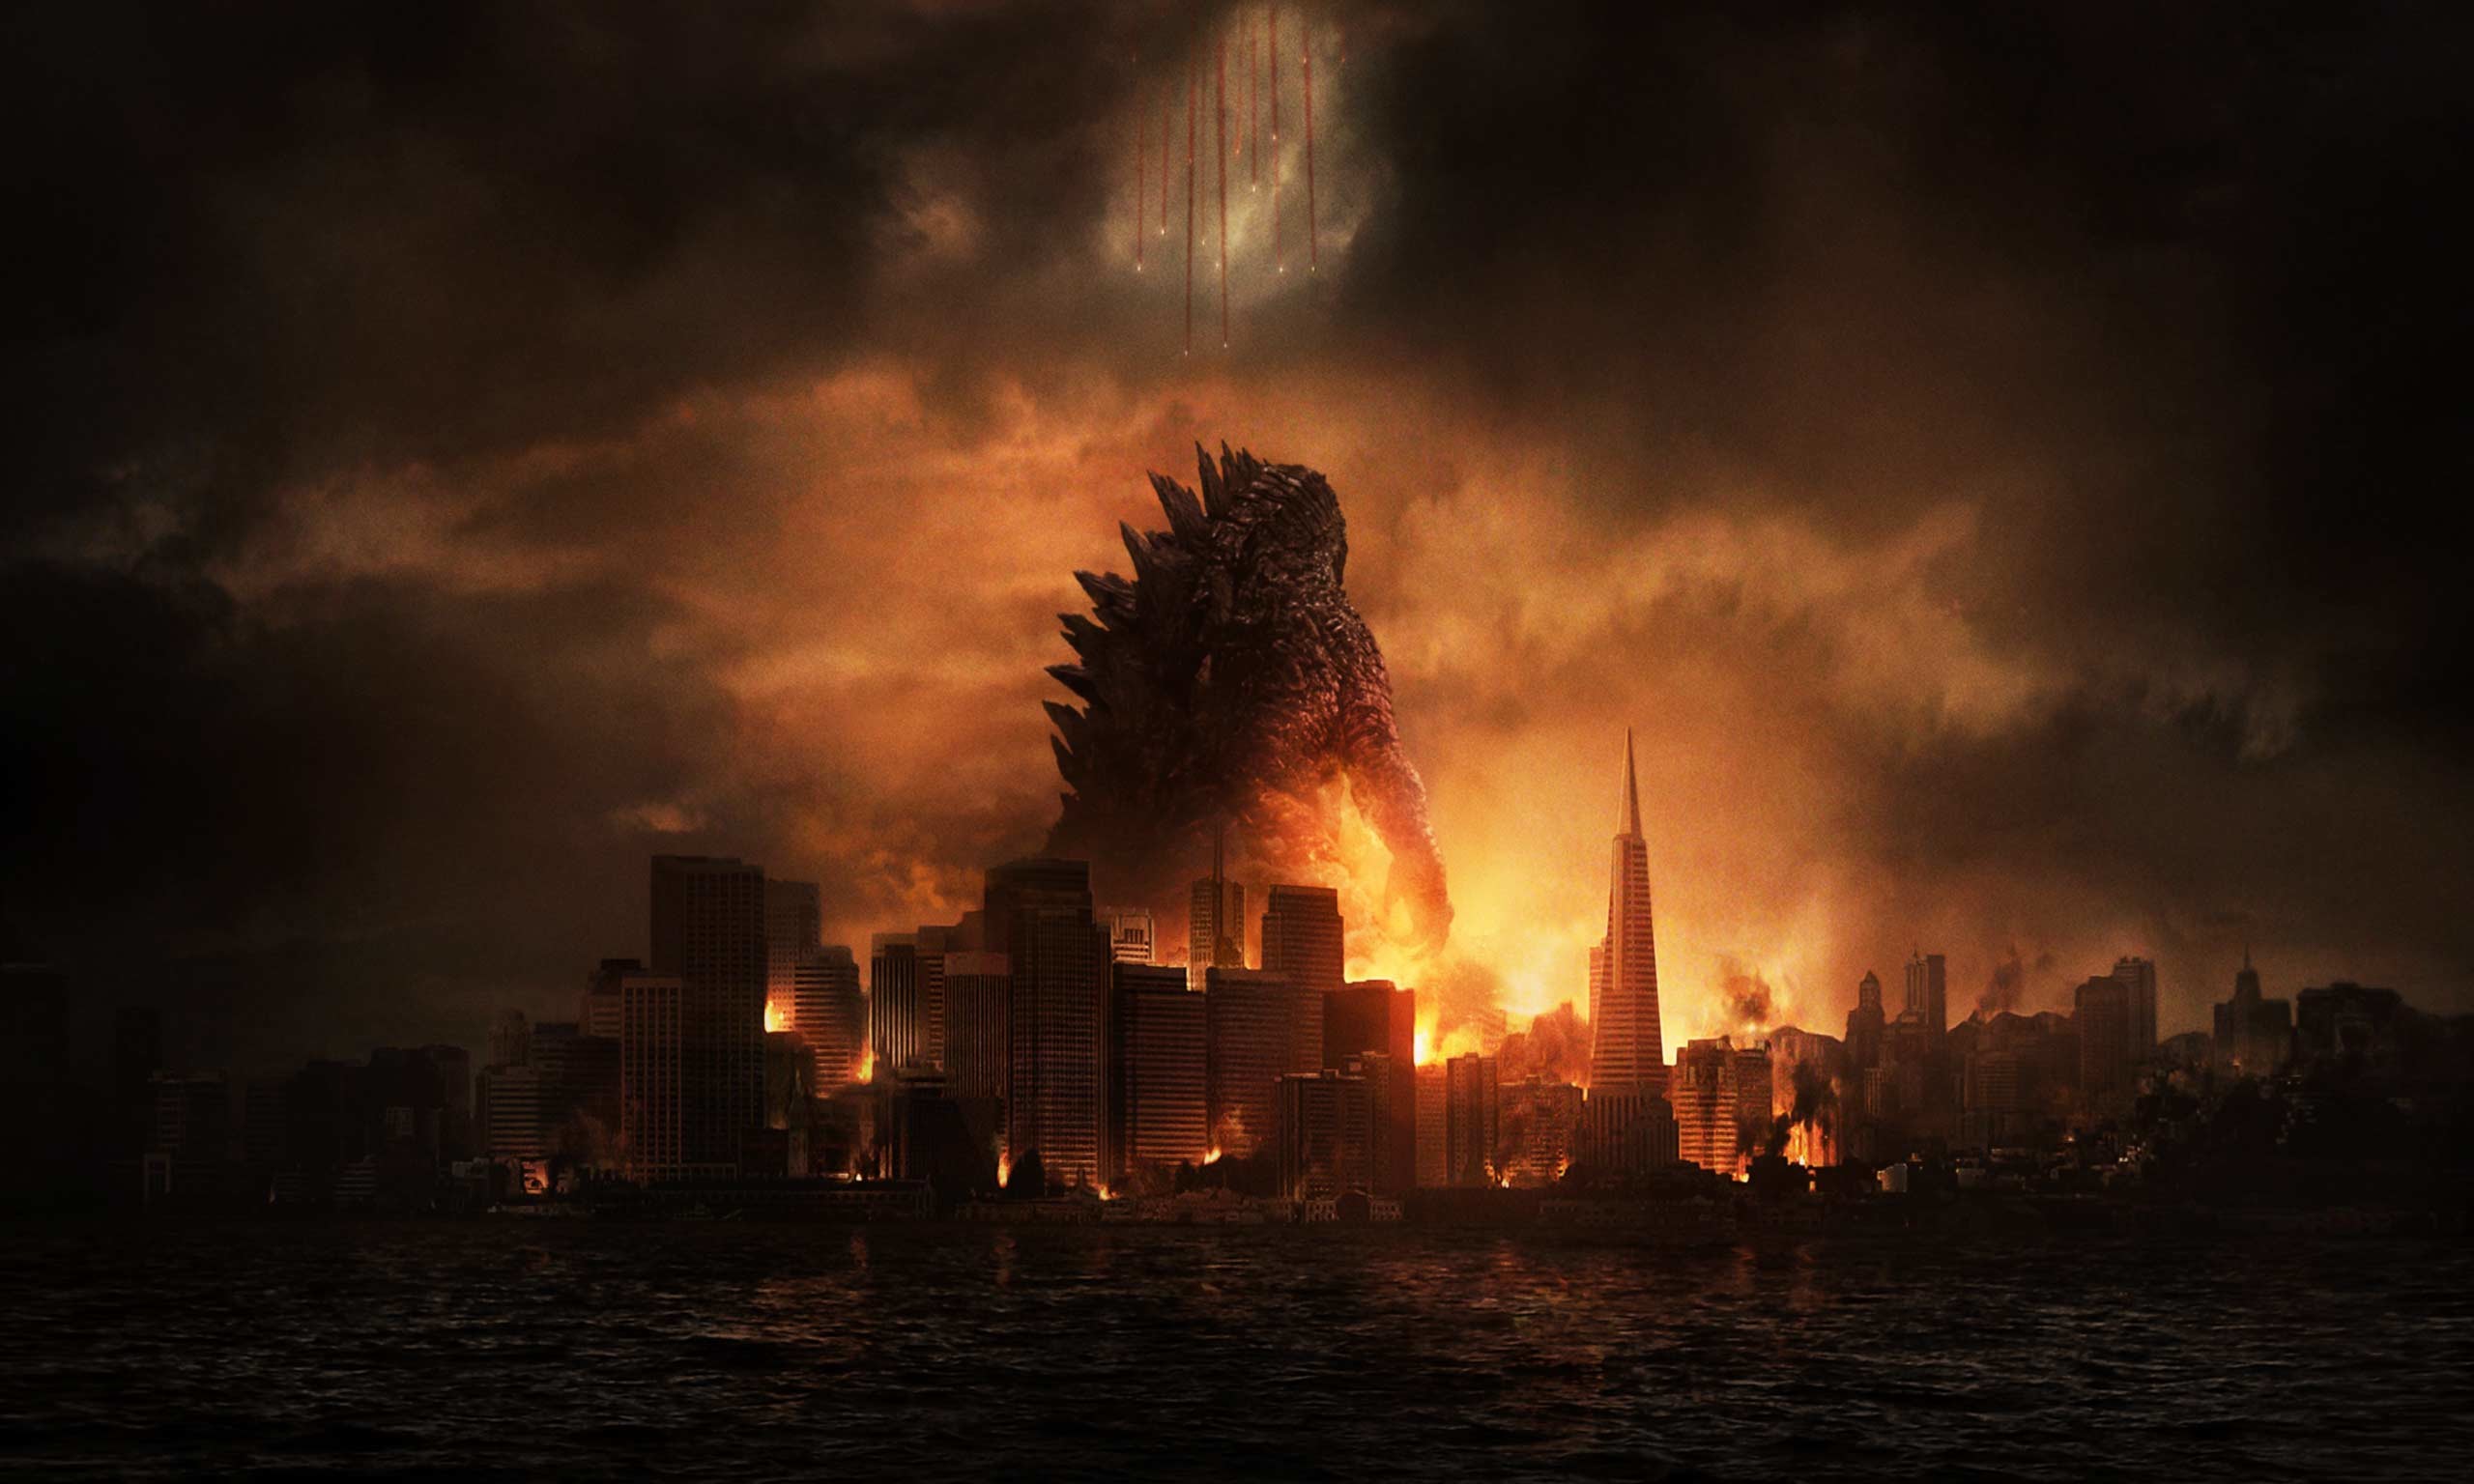 2560x1536 Godzilla (2014) HD Wallpaper | Hintergrund |  | ID:497521 -  Wallpaper Abyss